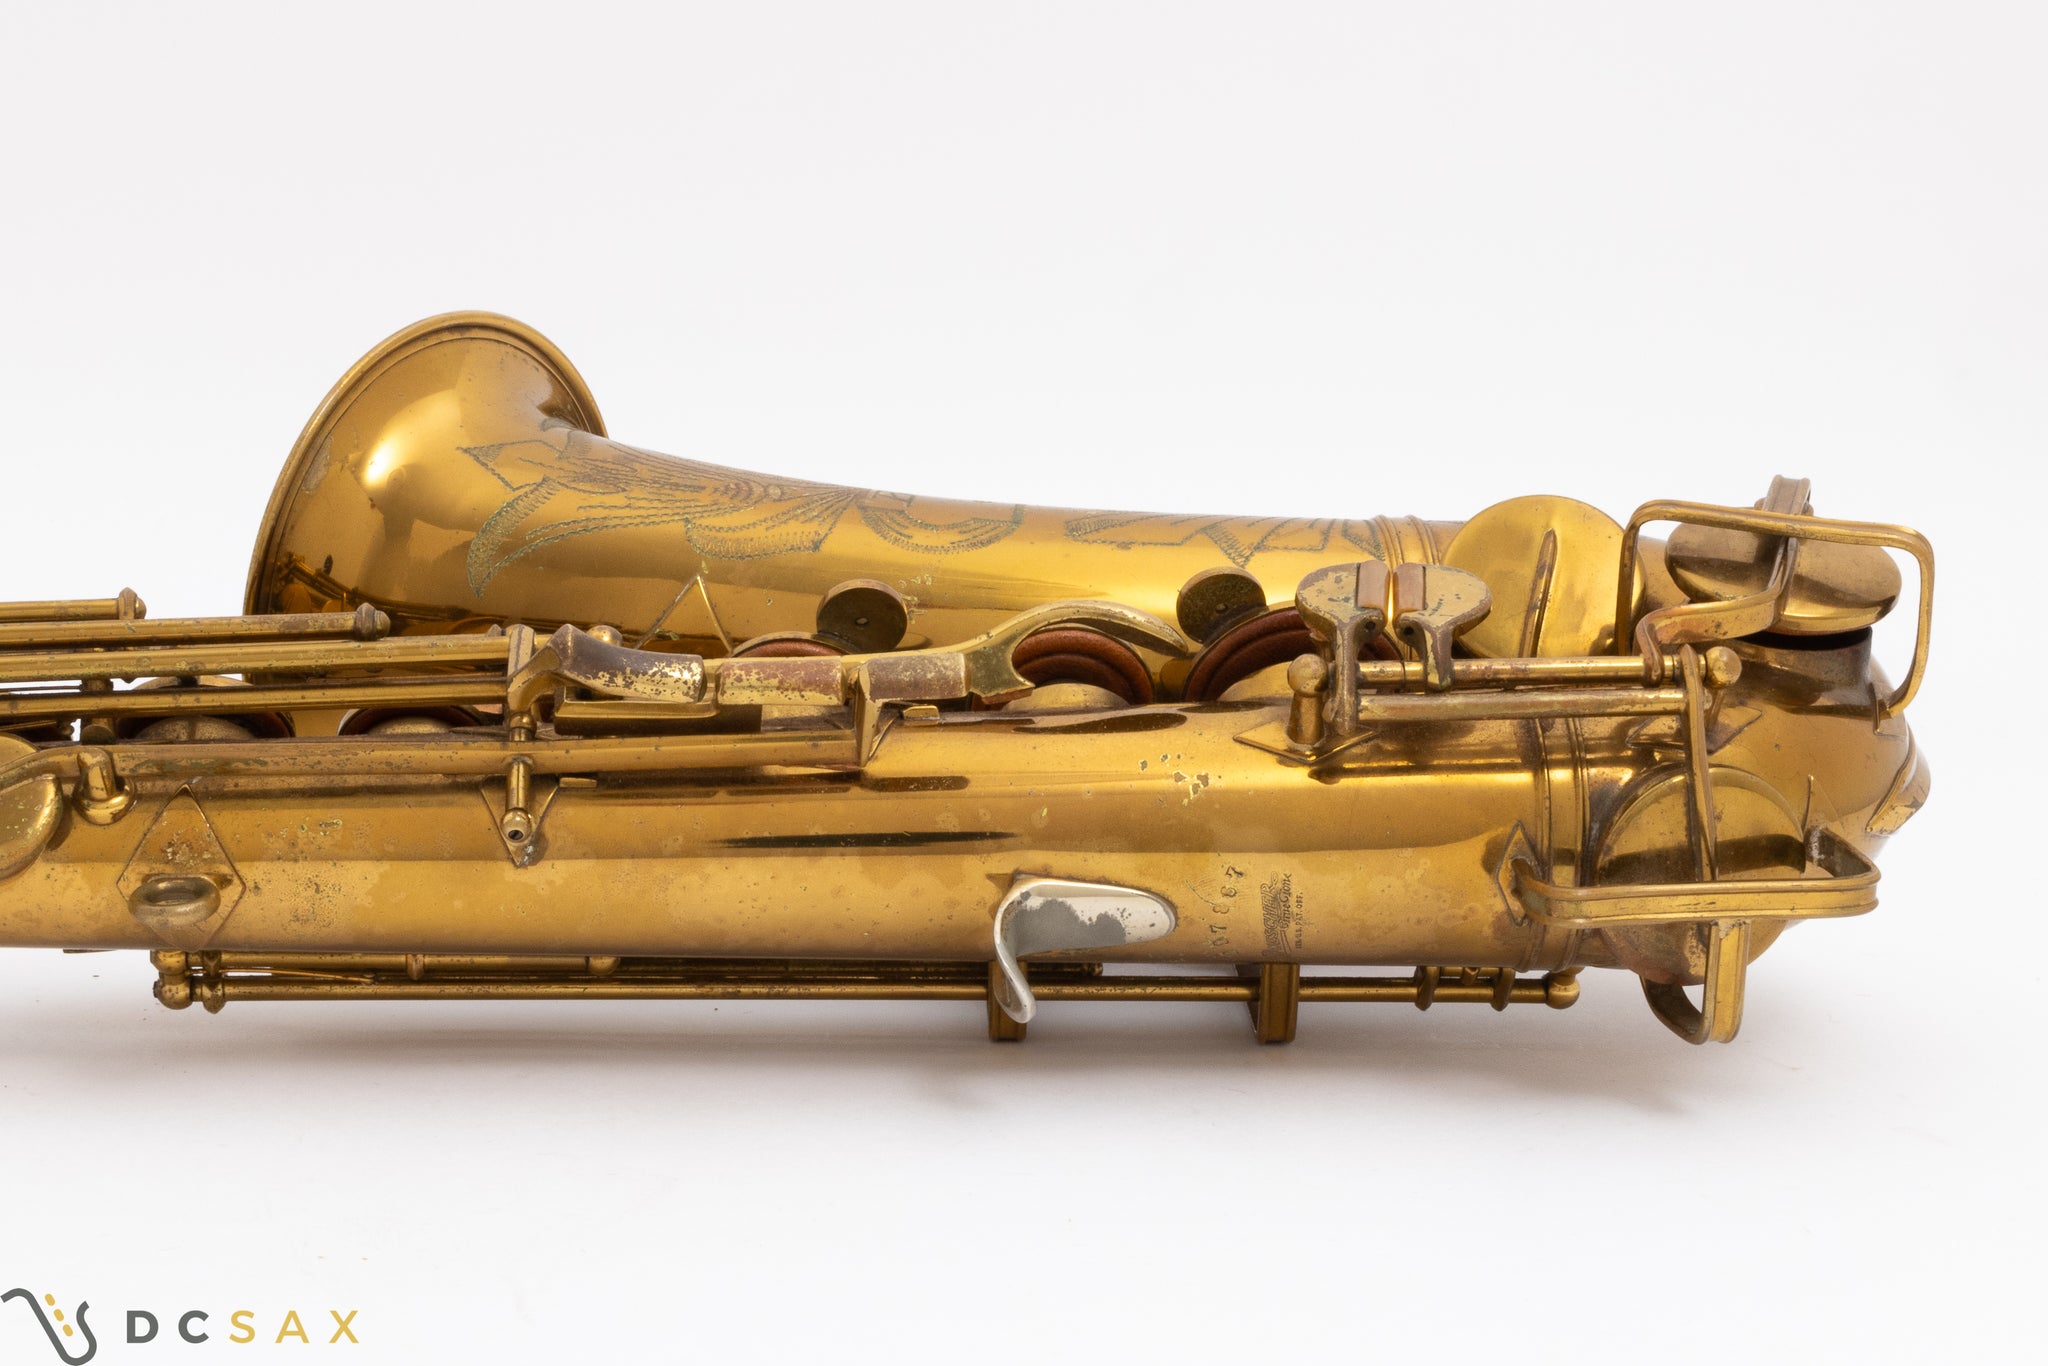 1941 Buescher Aristocrat II "Big B" Alto Saxophone, 95% Original Lacquer